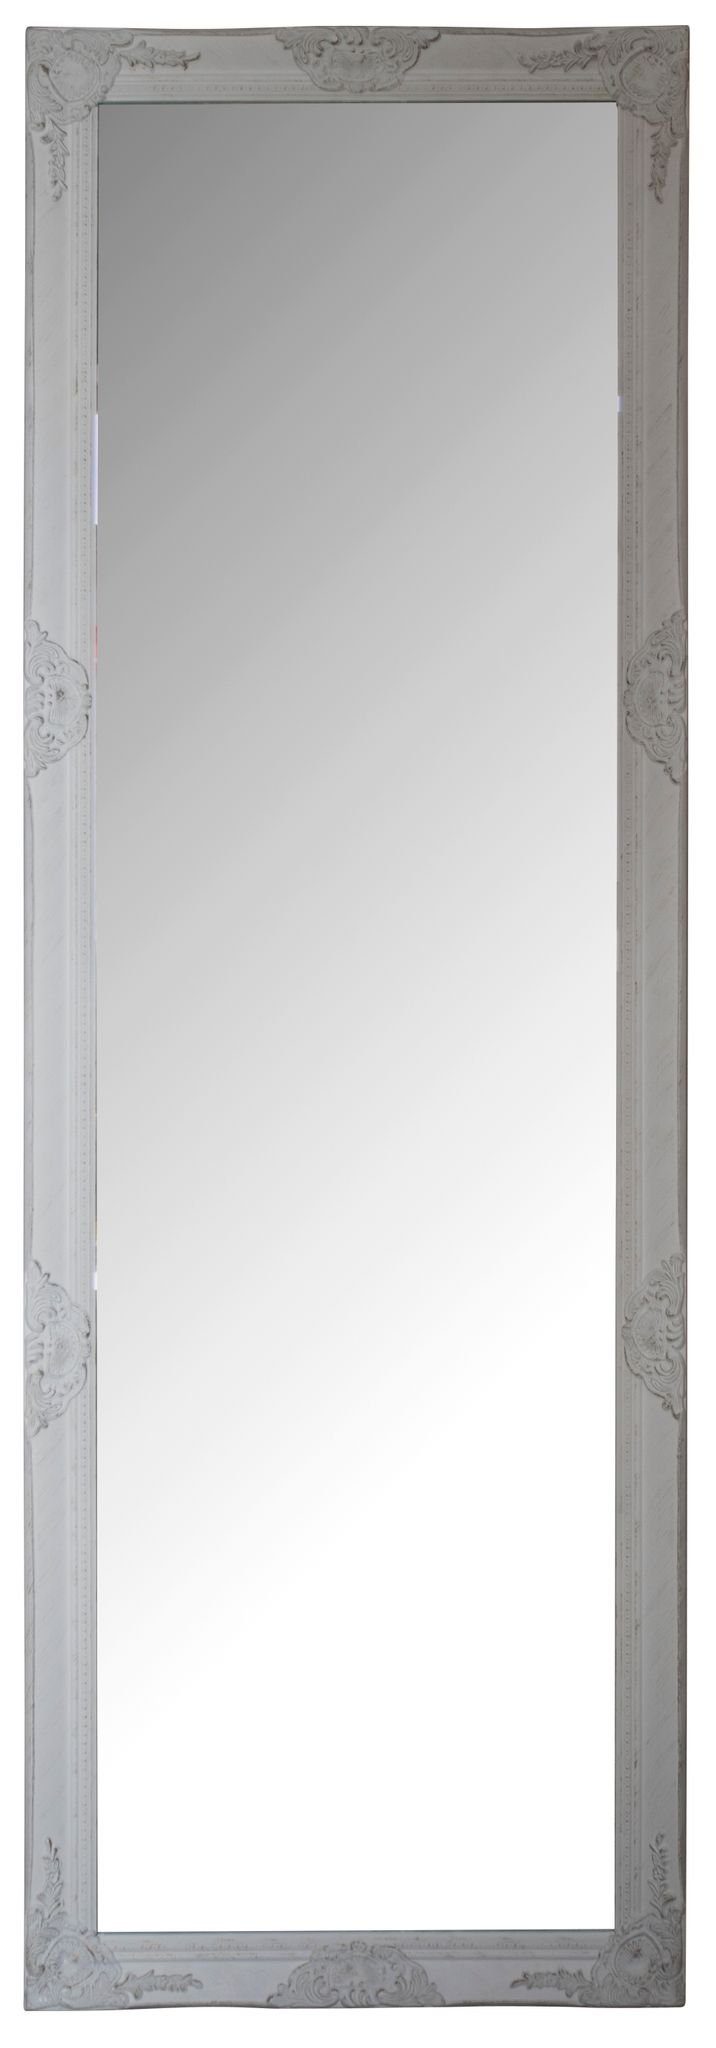 Wandspiegel 187x62x7 weiß Vintage Spiegel: 182x62x5 cm elbmöbel white, Wandspiegel Stil Ganzkörperspiegel